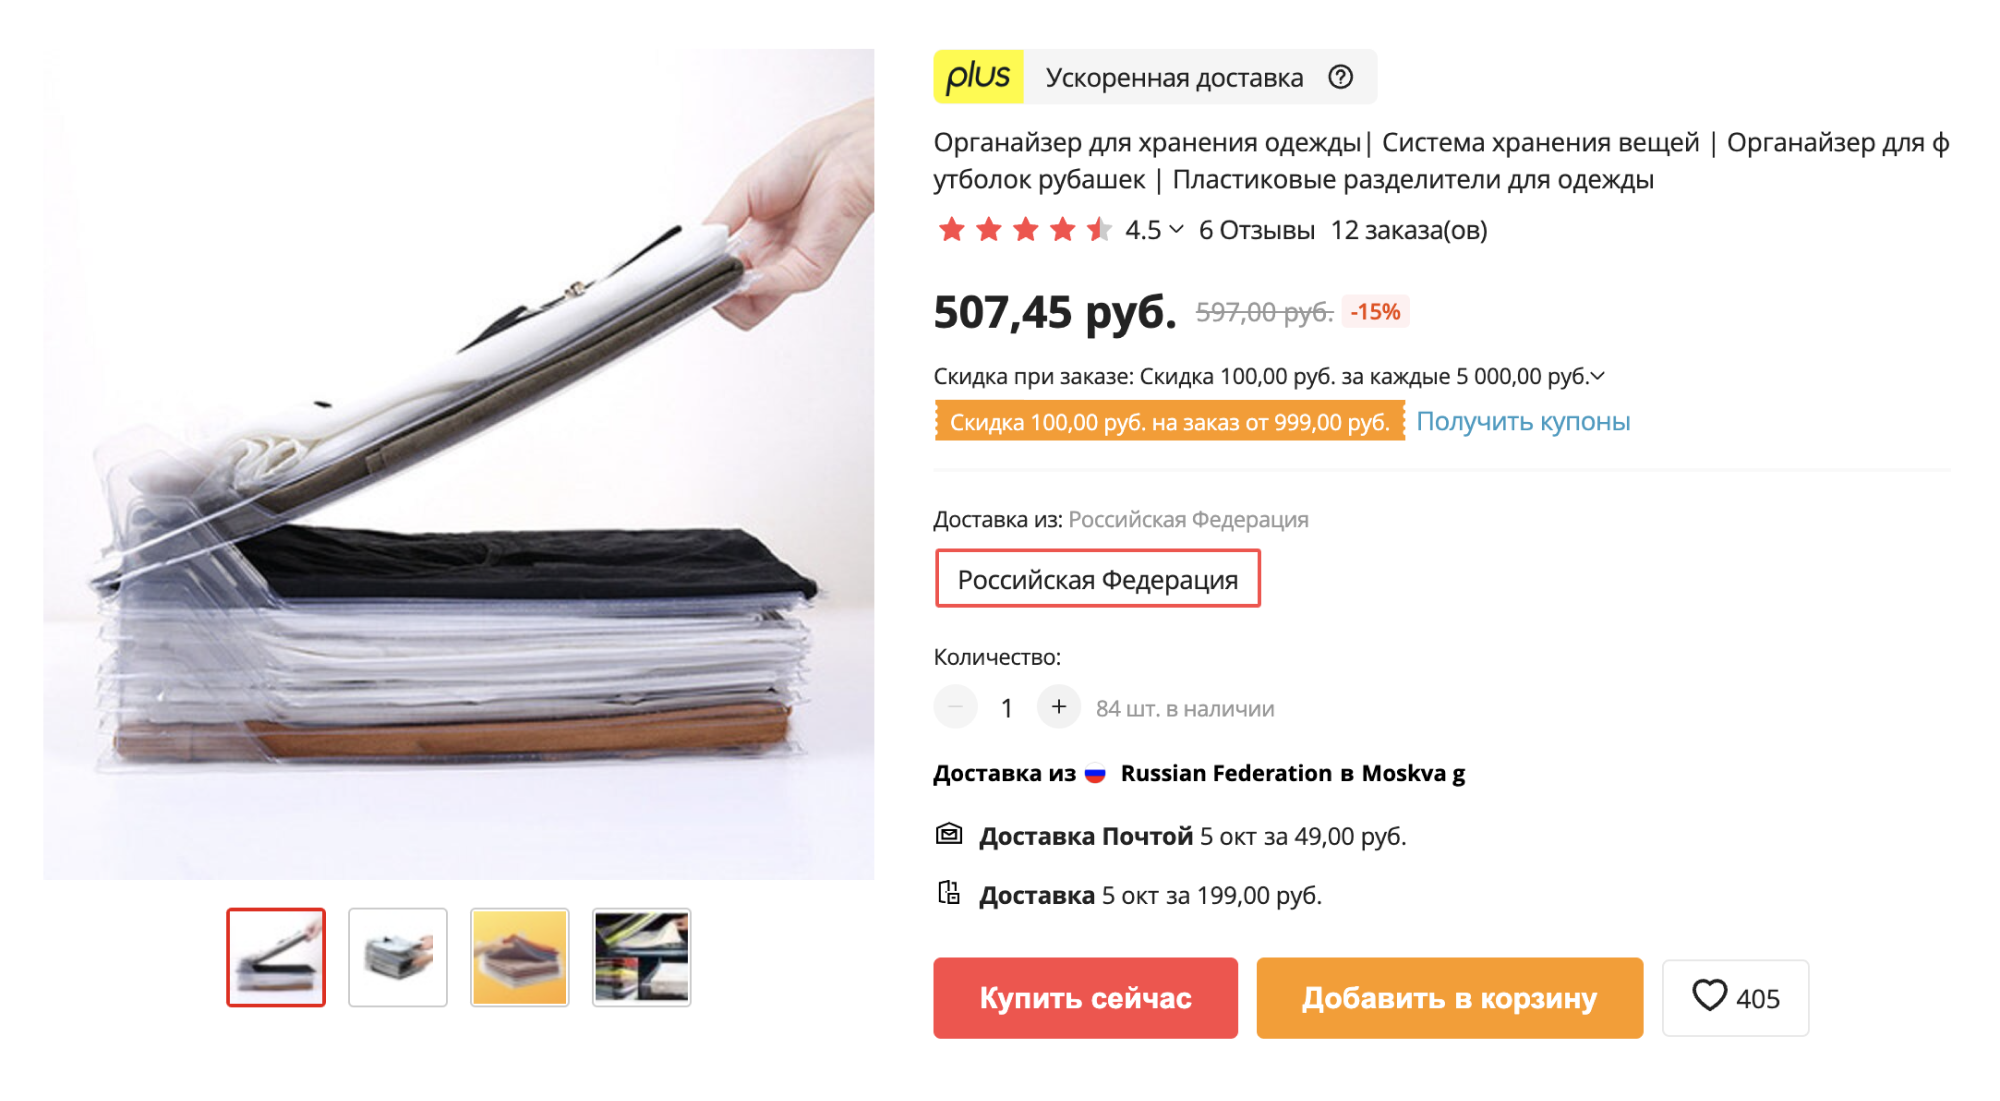 А это разделитель-книжка для перфекционистов: он позволяет хранить футболки в стопках и вытаскивать вещь из середины, не нарушая конструкцию. Источник: aliexpress.ru